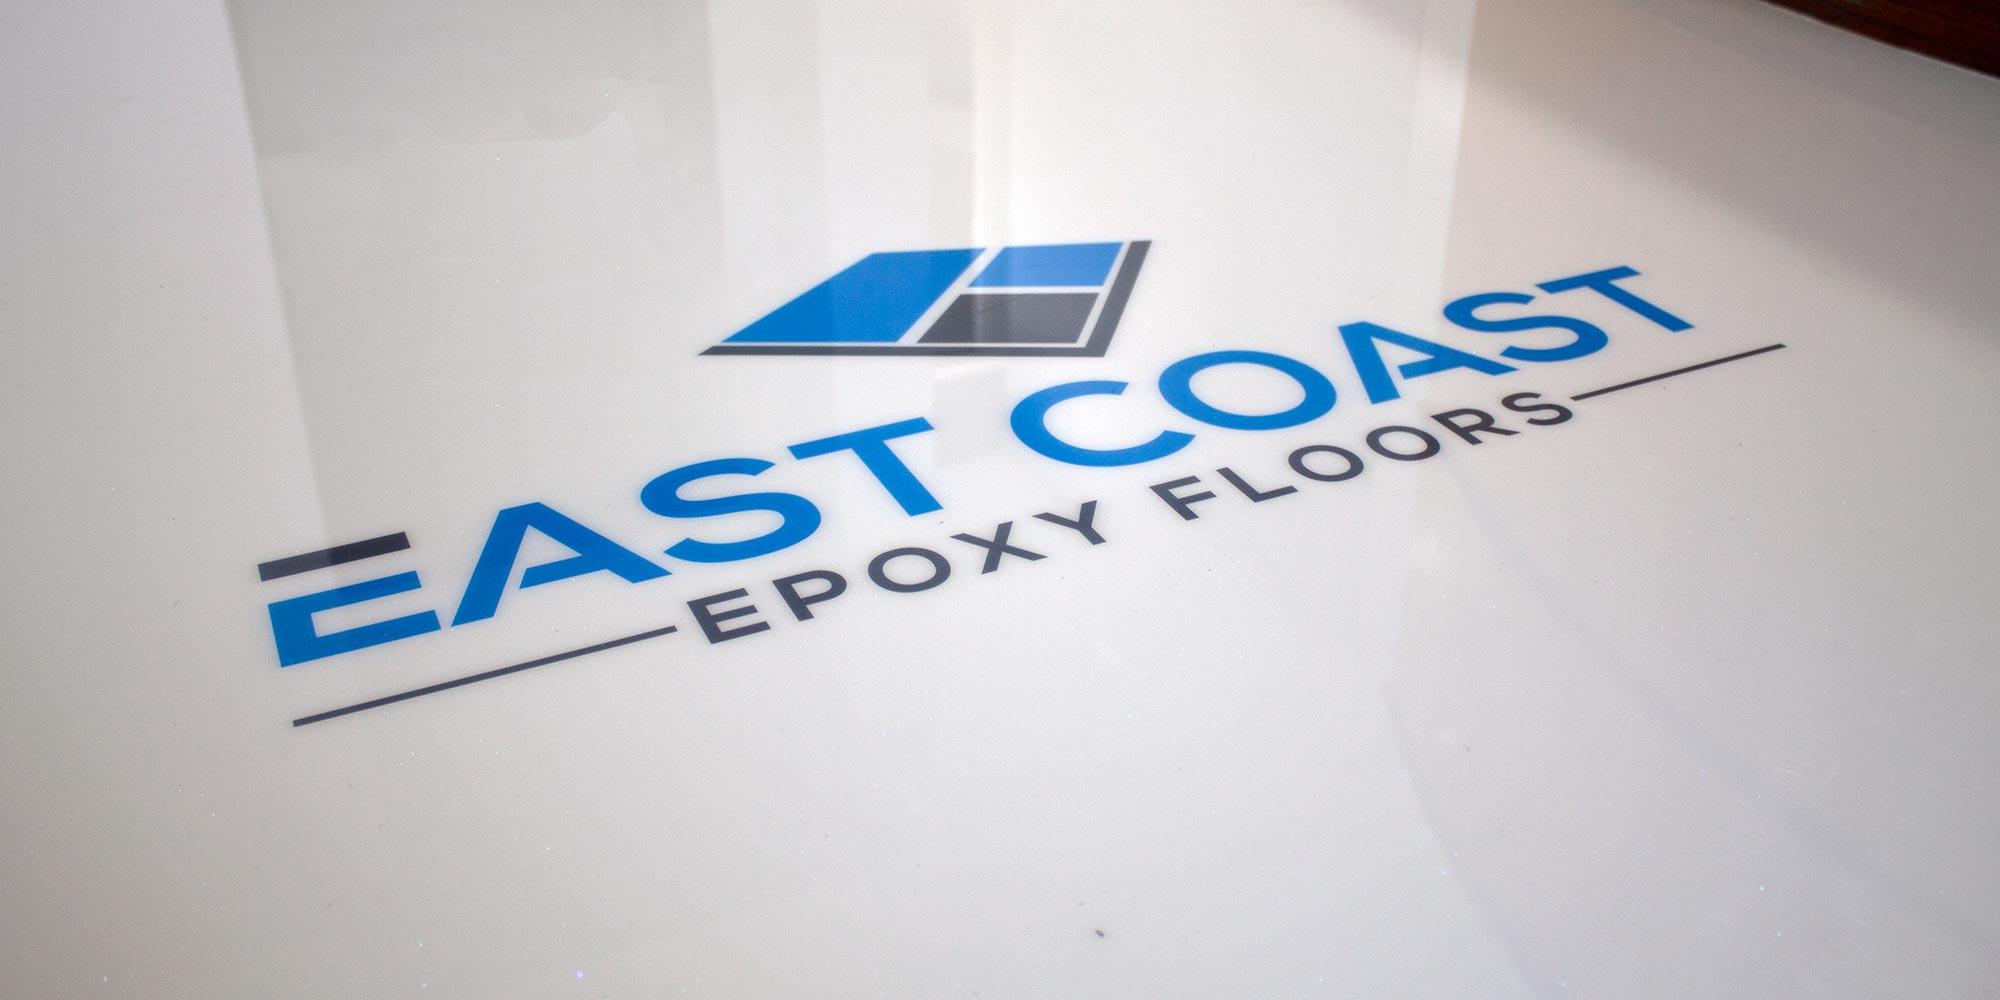 Epoxy Logo - Epoxy Floors Specialist in Port Macquarie - East Coast Epoxy Floors